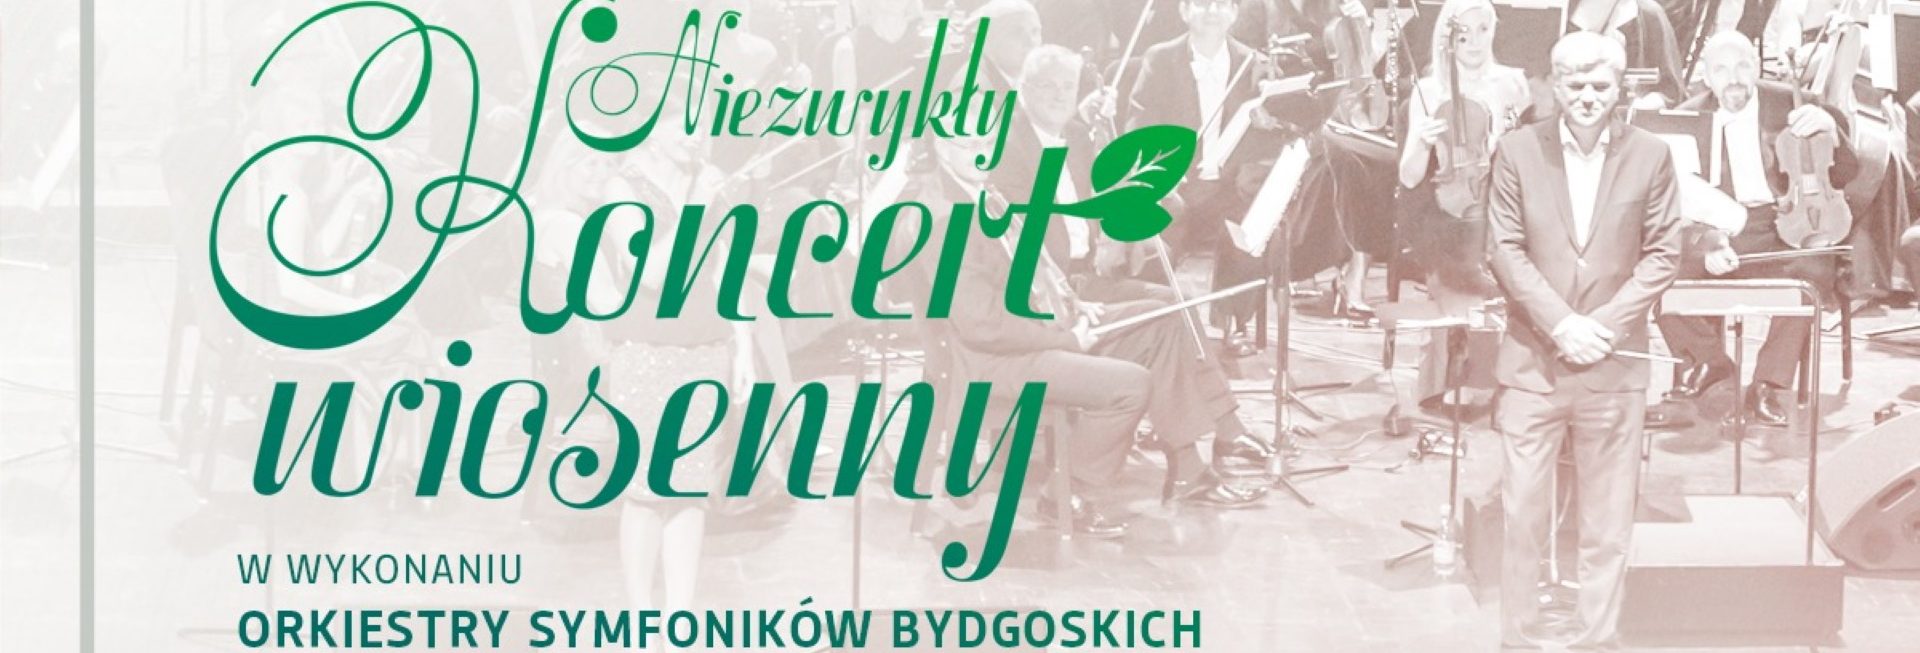 Plakat graficzny zapraszający do Iławy na Niezwykły Koncert Wiosenny w wykonaniu Orkiestry Symfoników Bydgoskich pod batutą Marka Czekały.